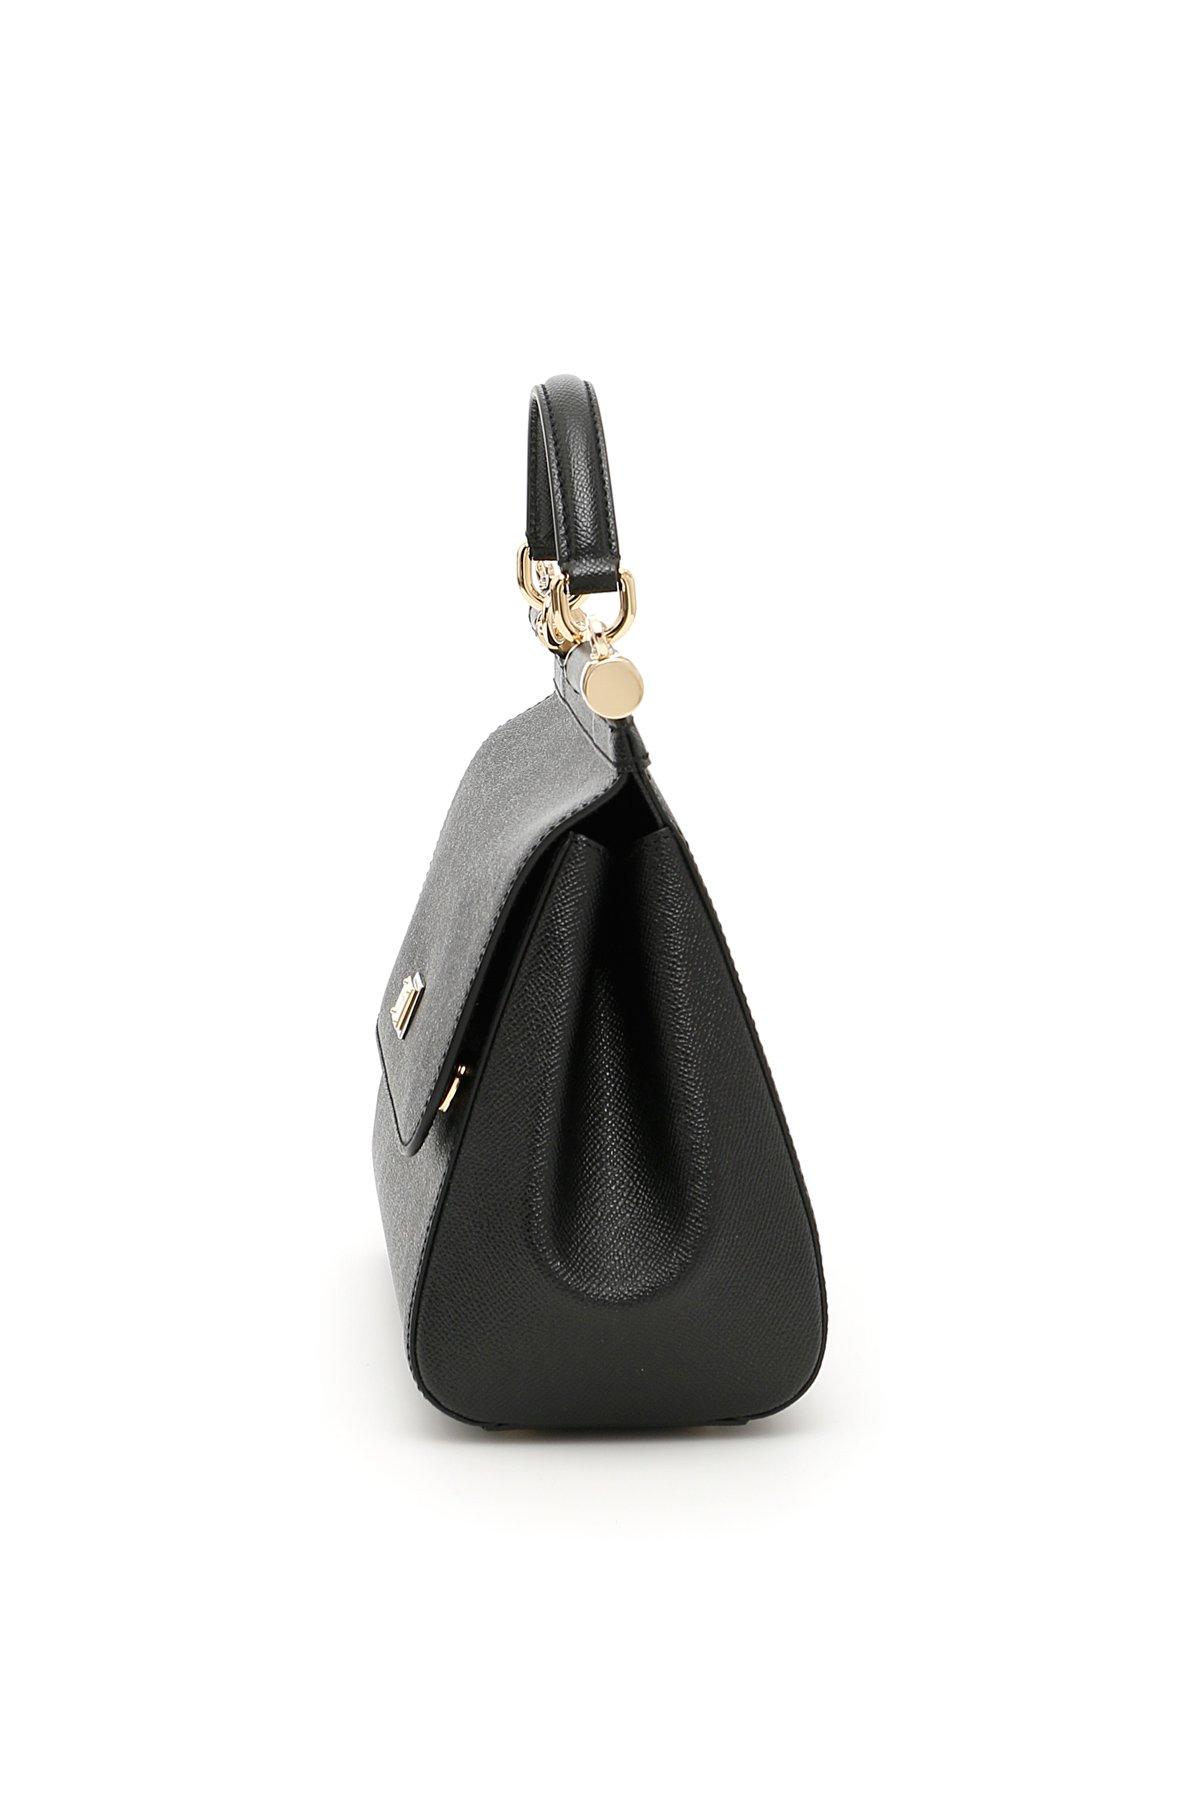 Dolce & Gabbana Small Sicily Bag in Black